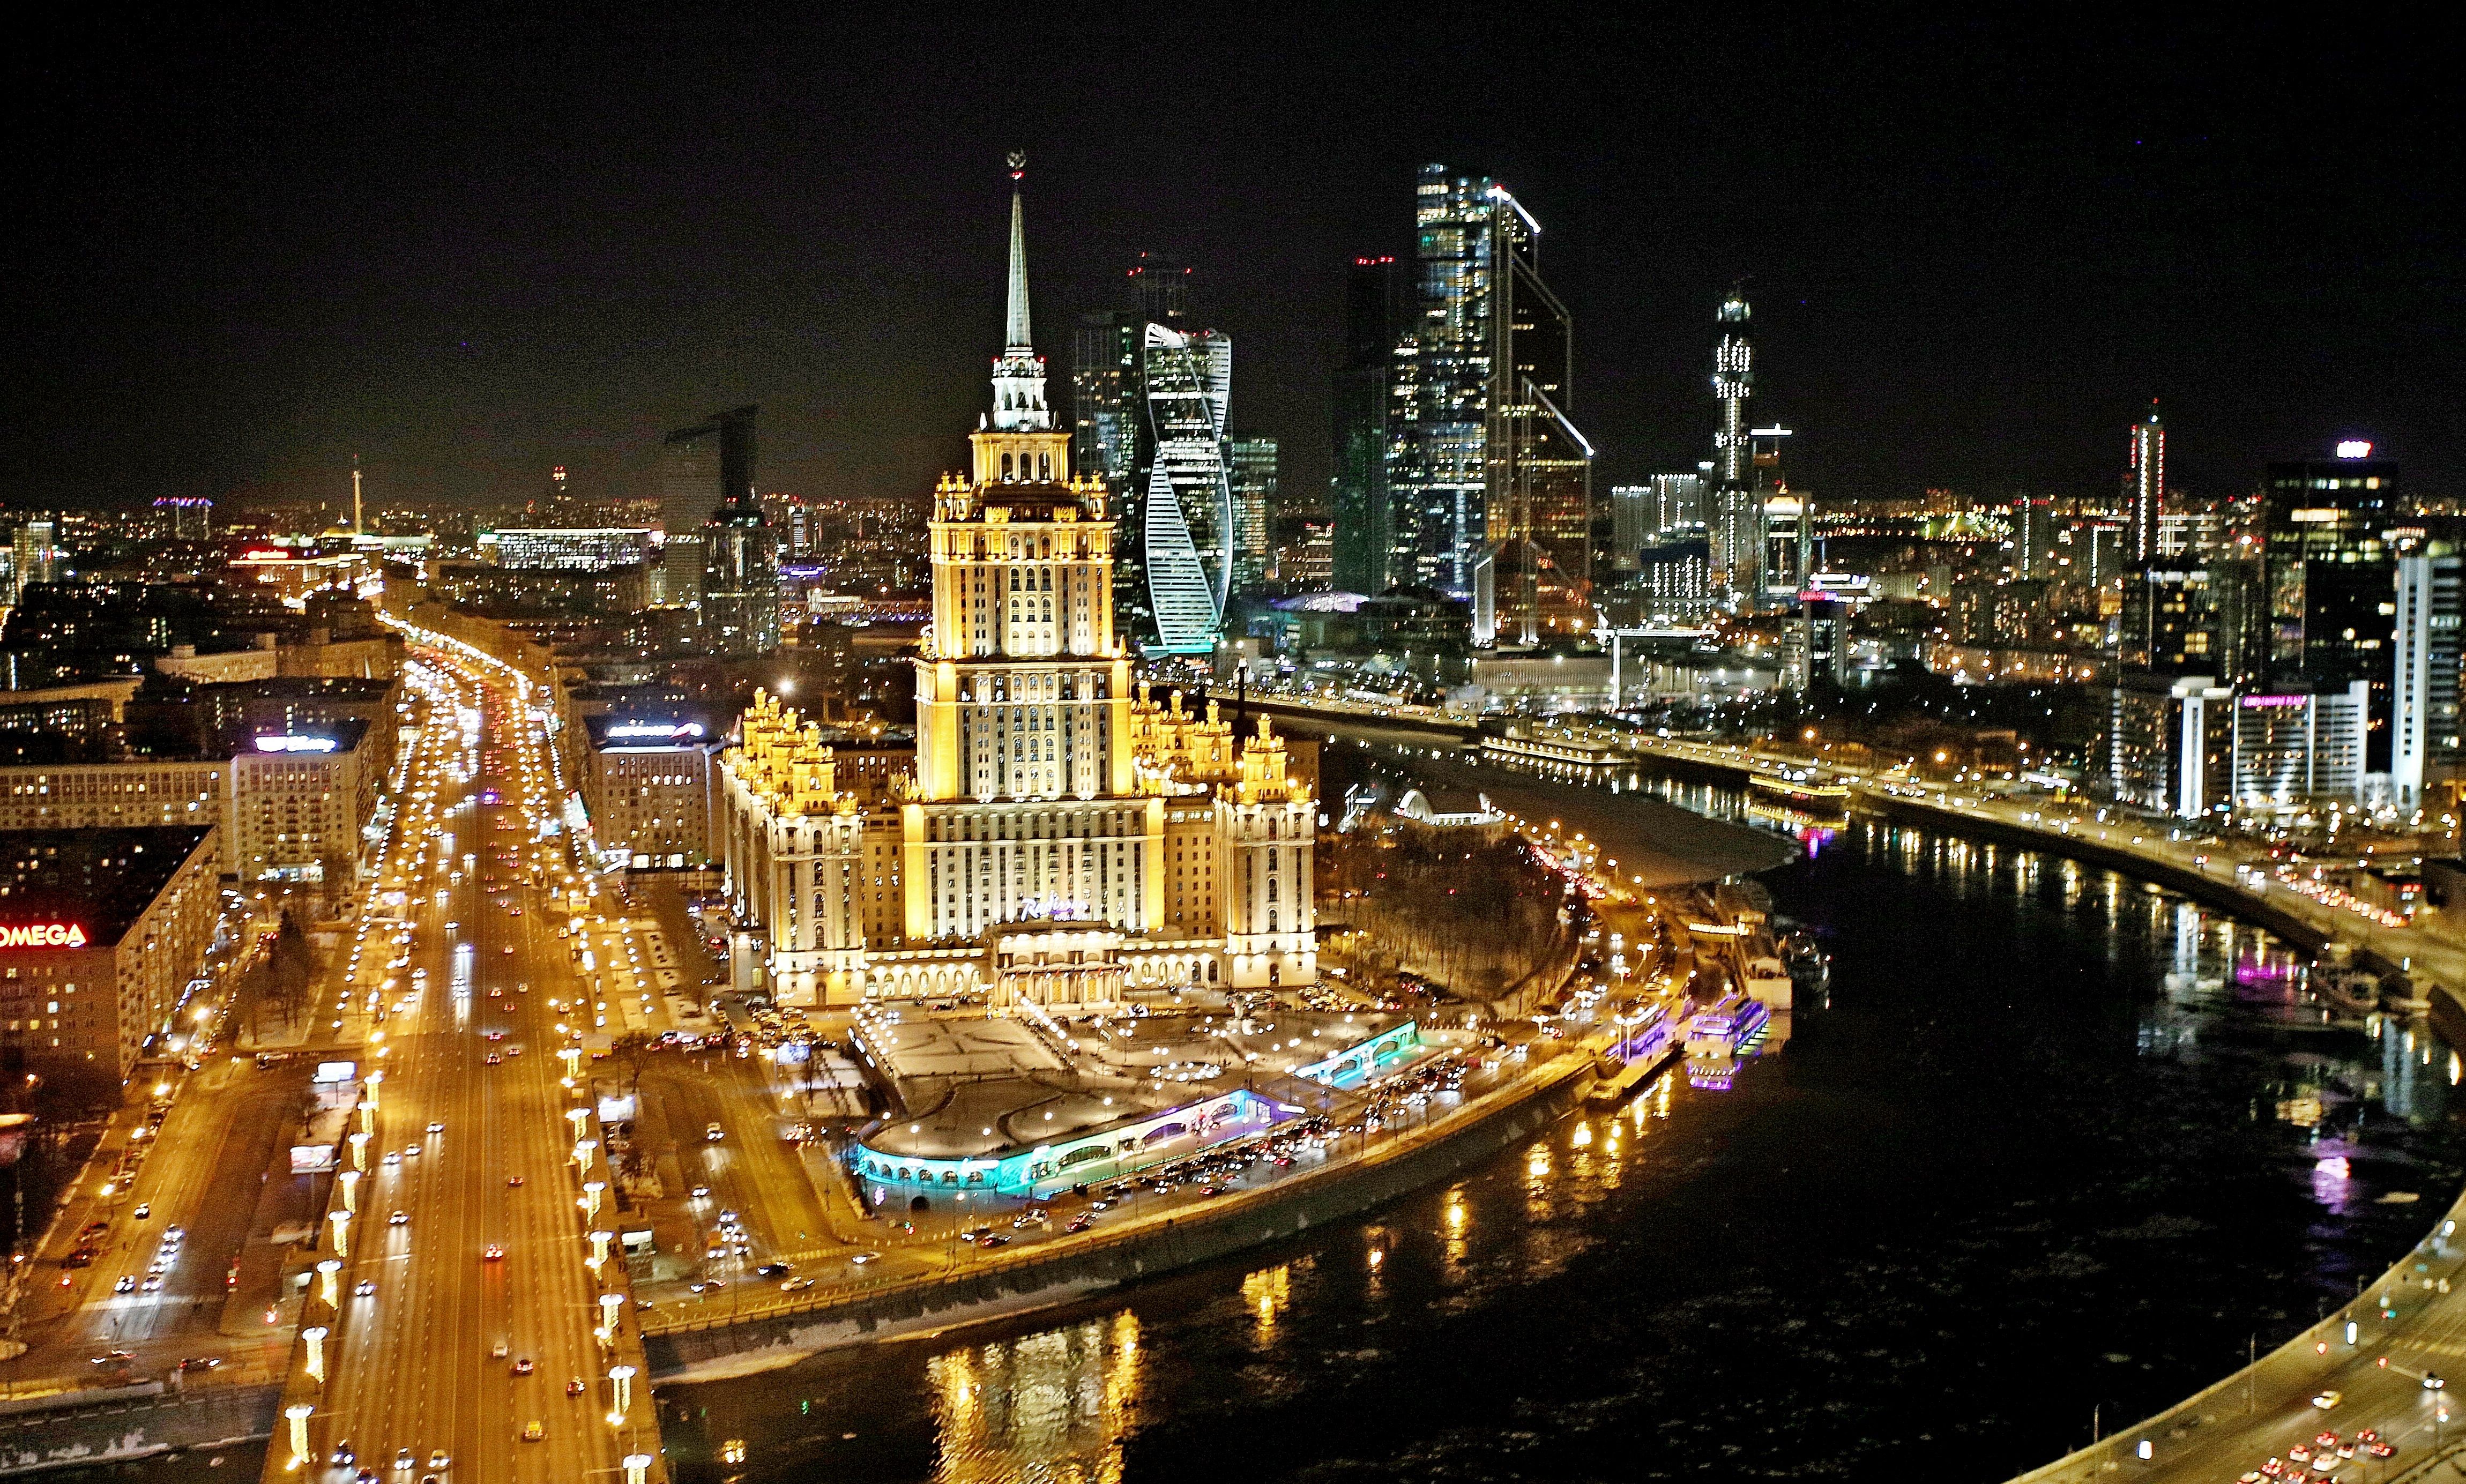 Фасадное освещение всех 130 московских офисов отключат в знак заботы о будущем планеты. Фото: Антон Гердо